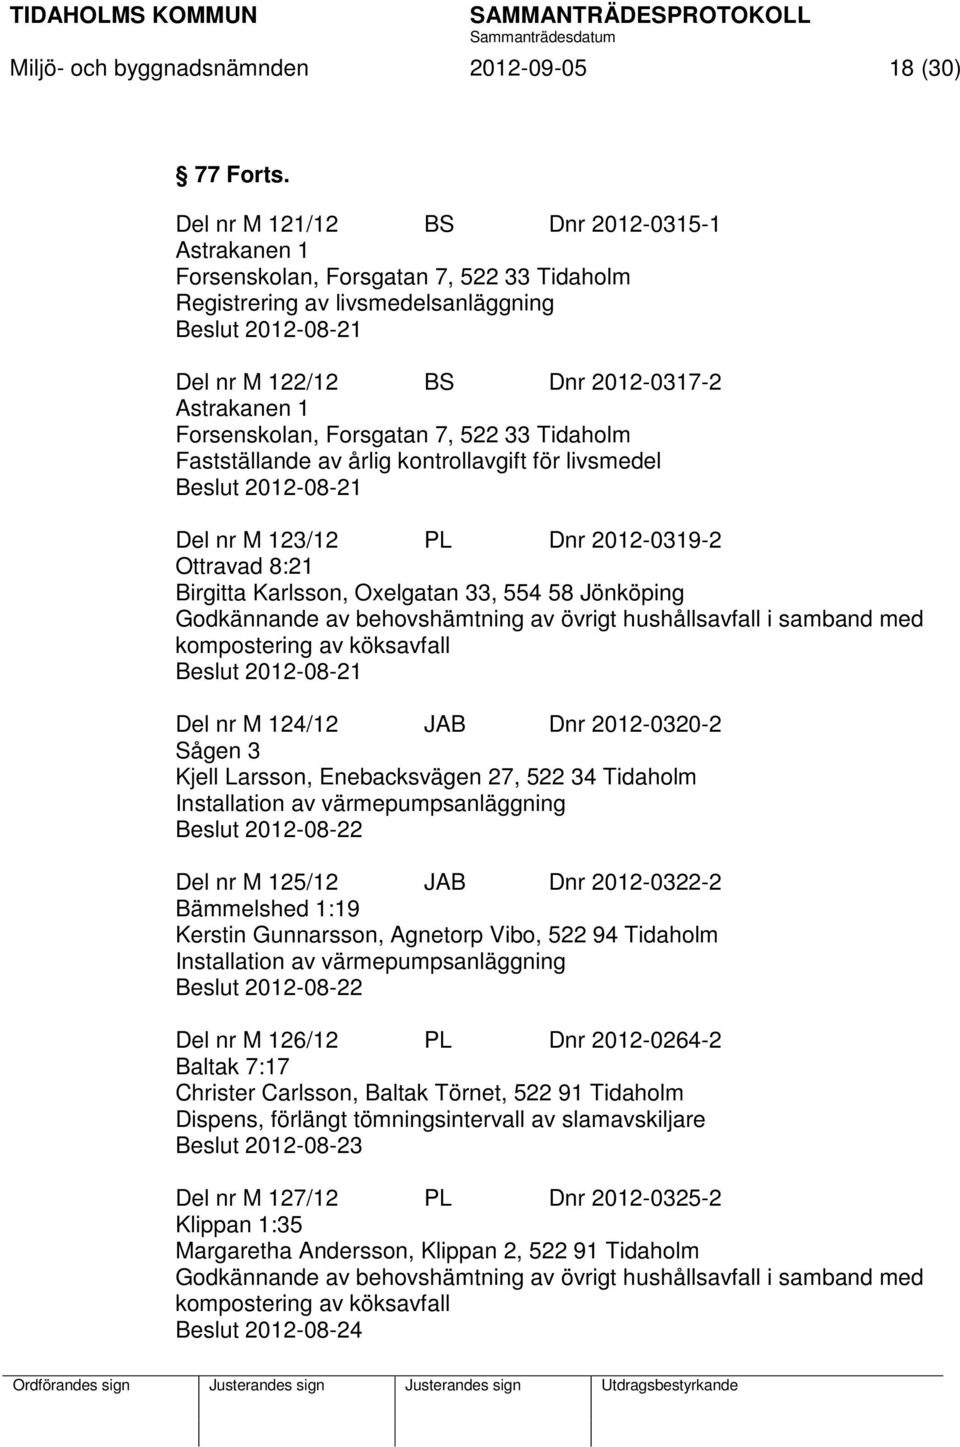 Forsenskolan, Forsgatan 7, 522 33 Tidaholm Fastställande av årlig kontrollavgift för livsmedel Beslut 2012-08-21 Del nr M 123/12 PL Dnr 2012-0319-2 Ottravad 8:21 Birgitta Karlsson, Oxelgatan 33, 554